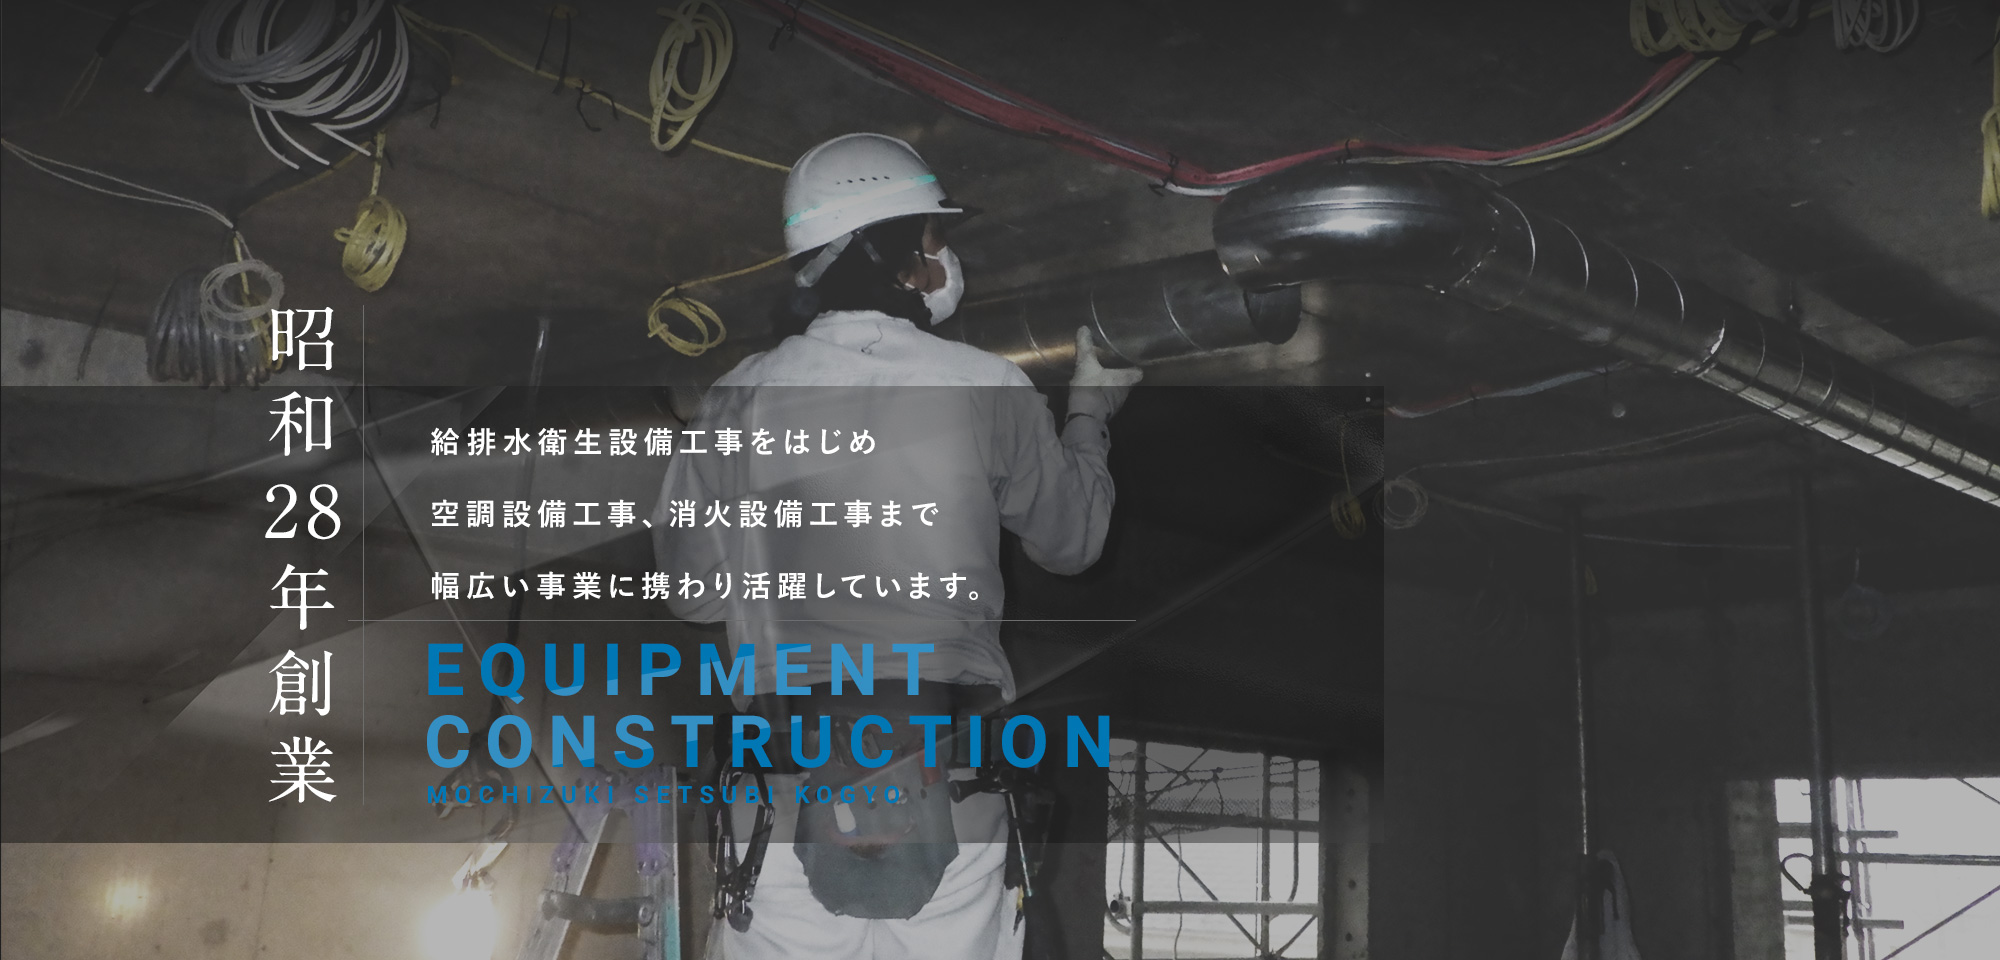 昭和28年創業 給排水衛生設備工事をはじめ空調設備工事、消火設備工事まで幅広い事業に携わり活躍しています。